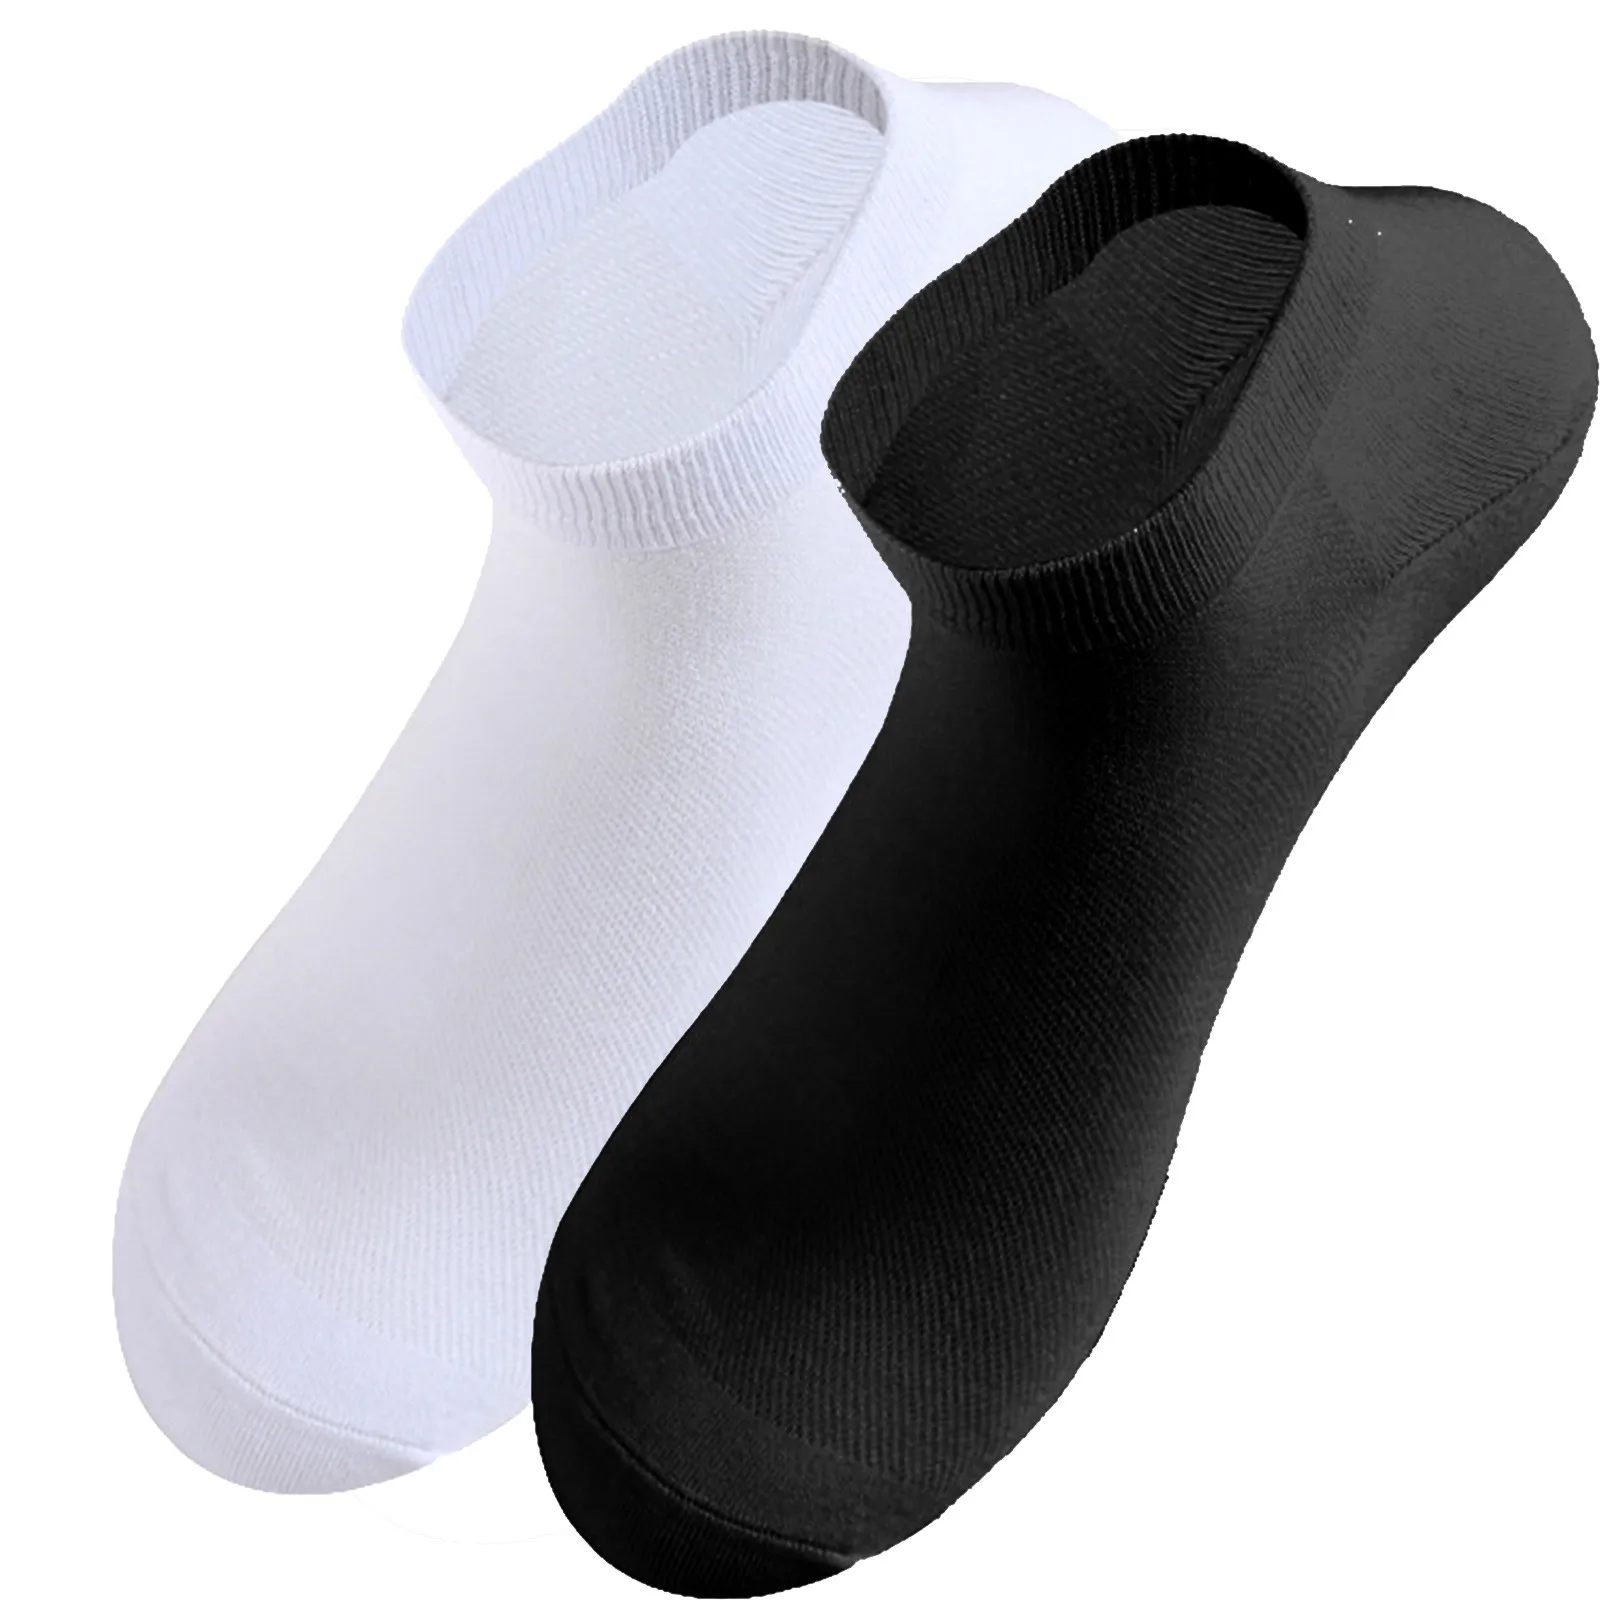 

Новый стиль, Компрессионные Носки, противоскользящие Носки для футбола, спортивные Носки для бейсбола, регби, Носки